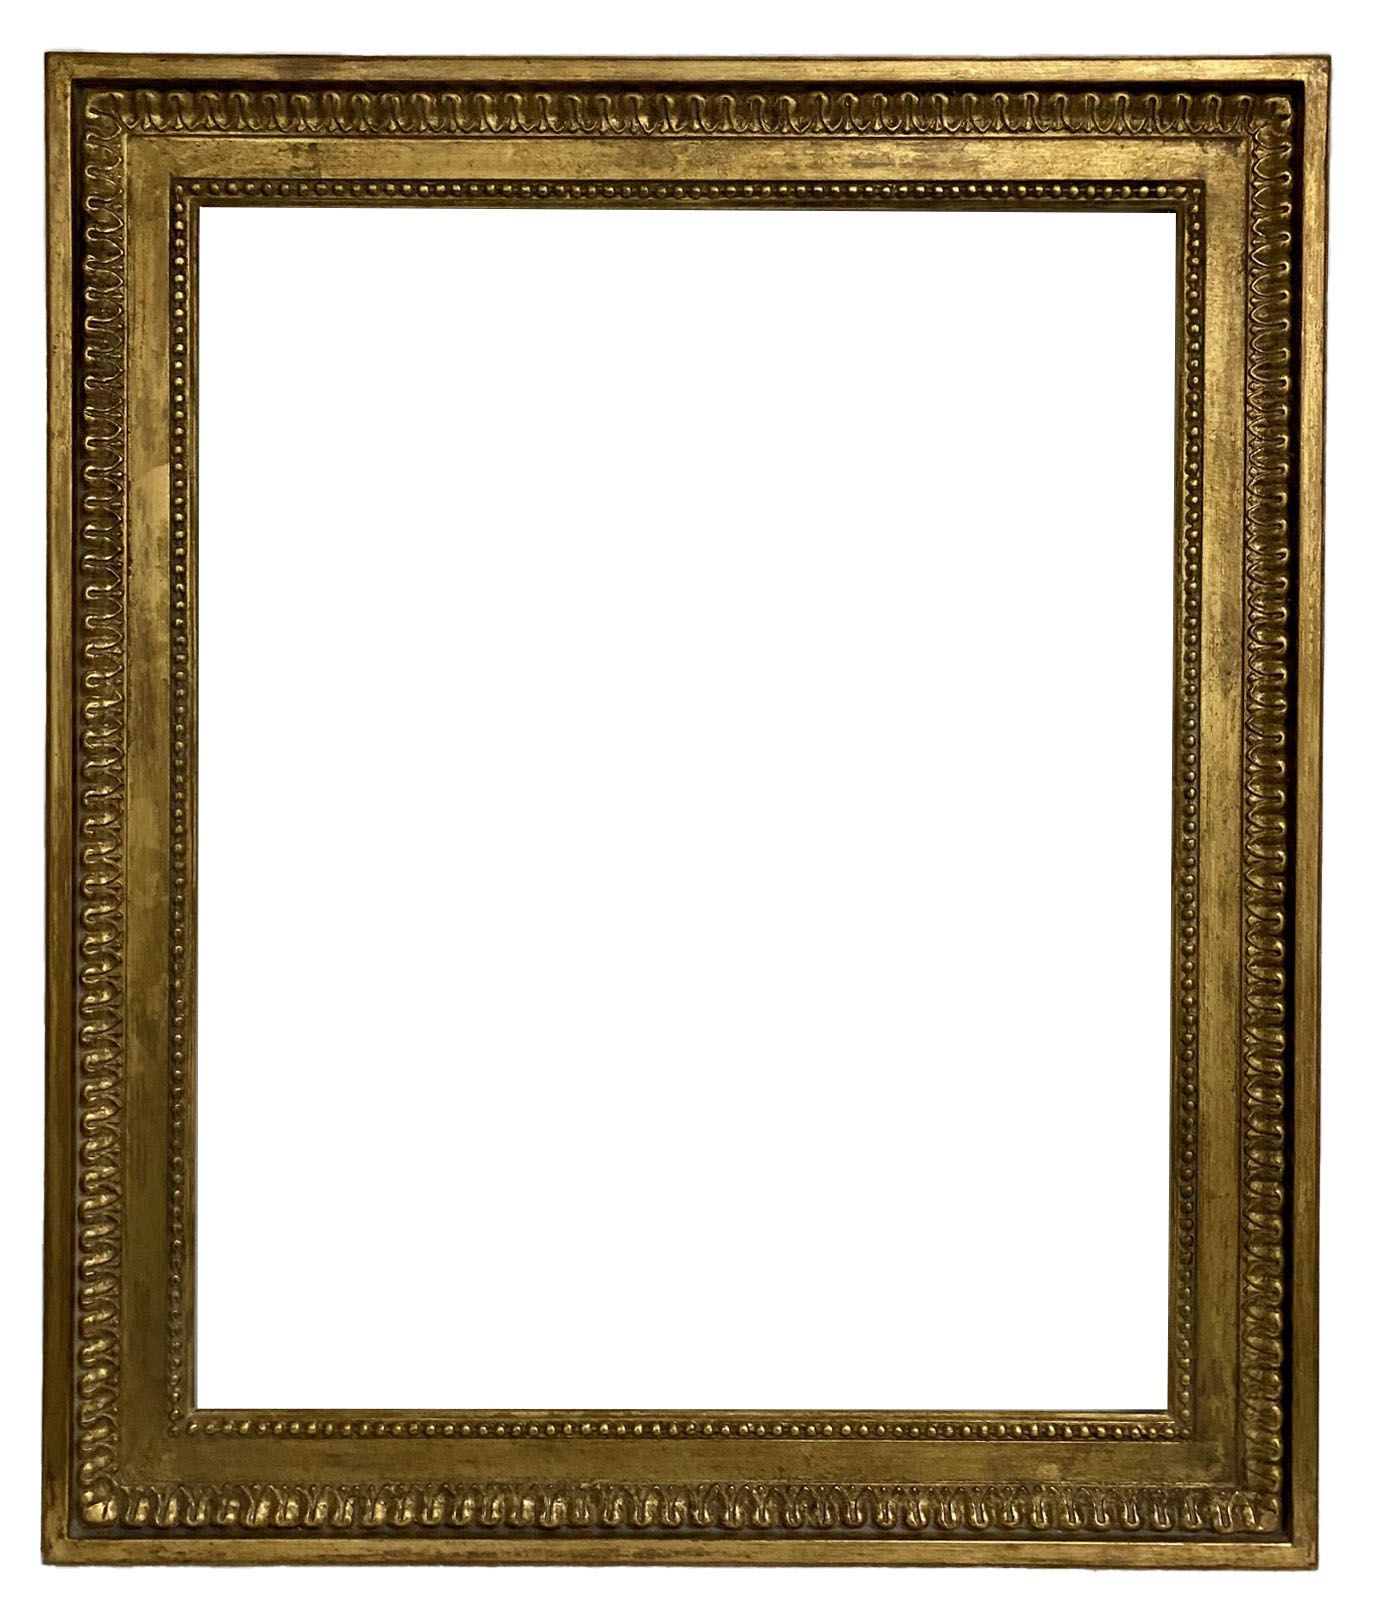 Cadre de style Louis XVI - 65,70 x 53,80 - REF - 1391